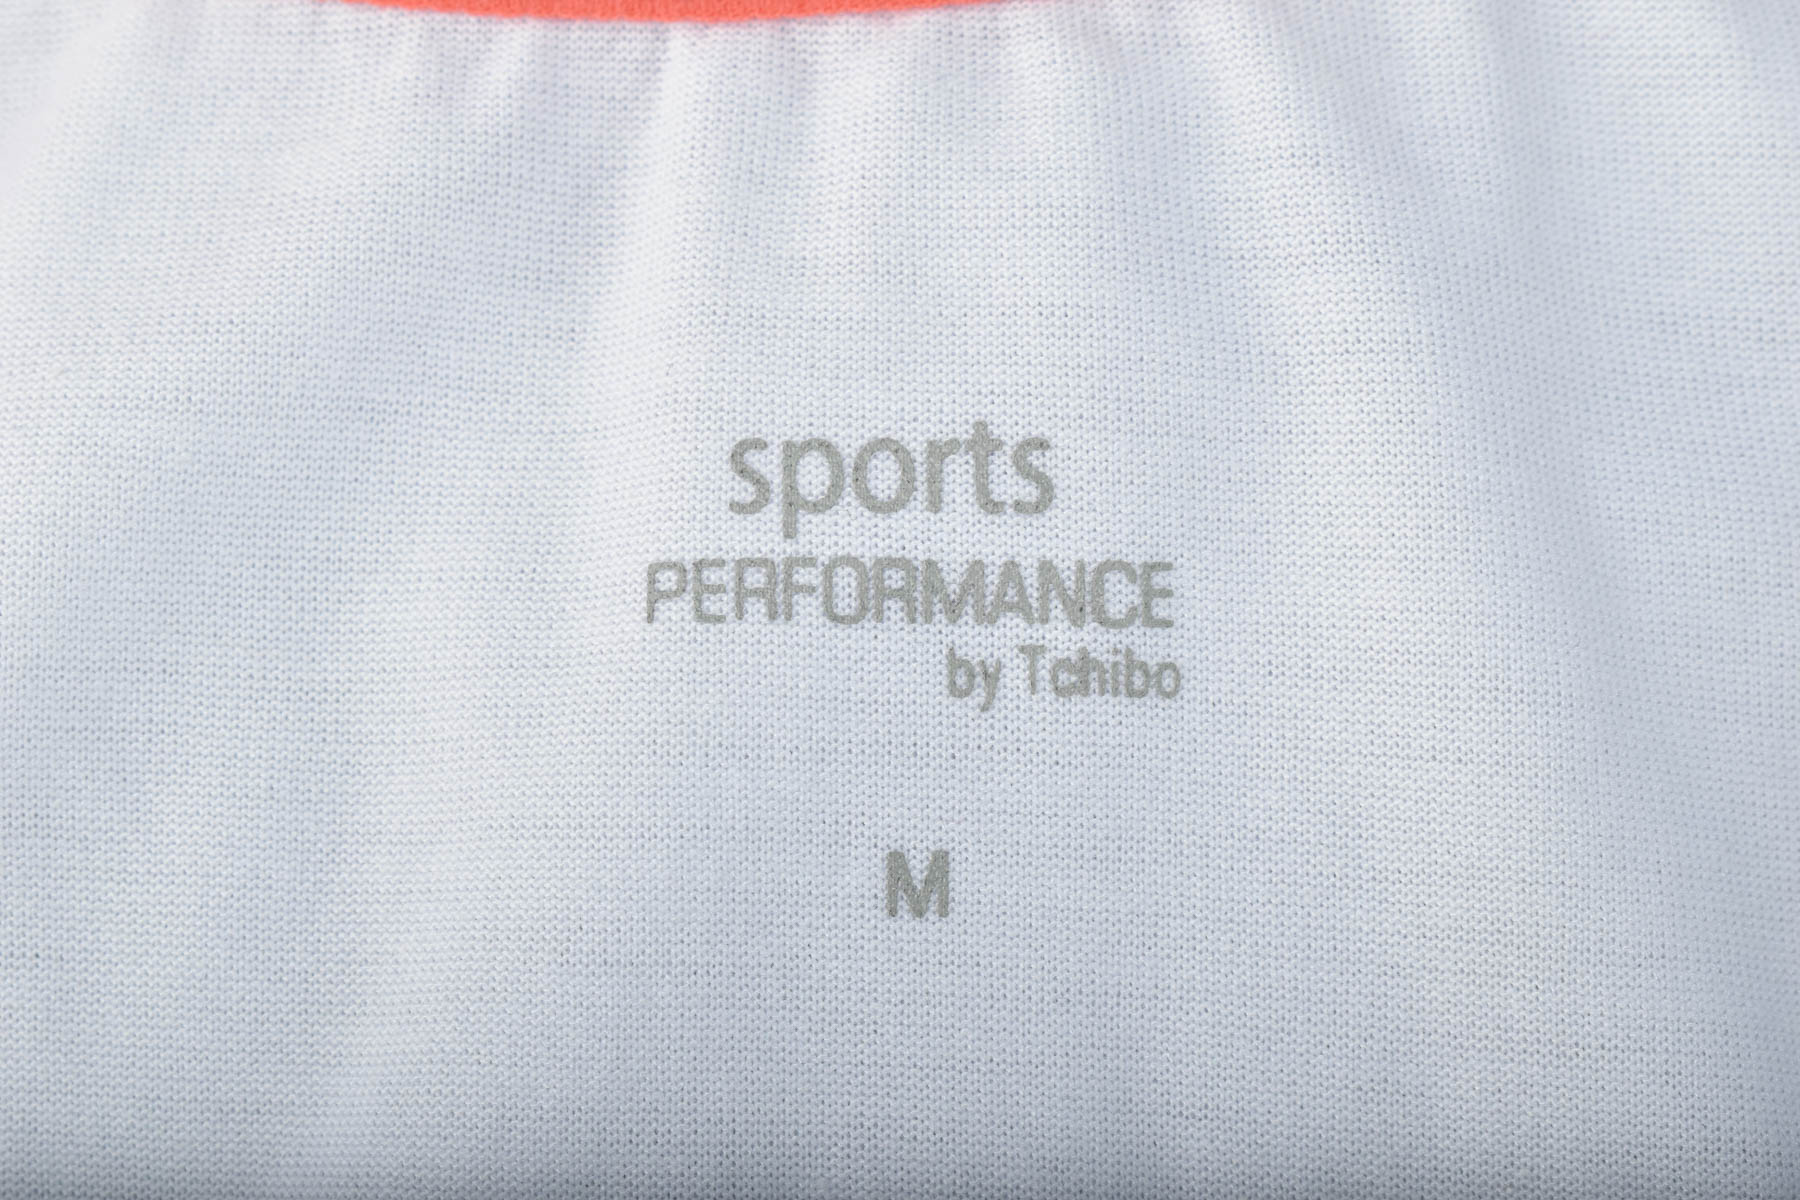 Damski podkoszulek - Sports PERFORMANCE by Tchibo - 2